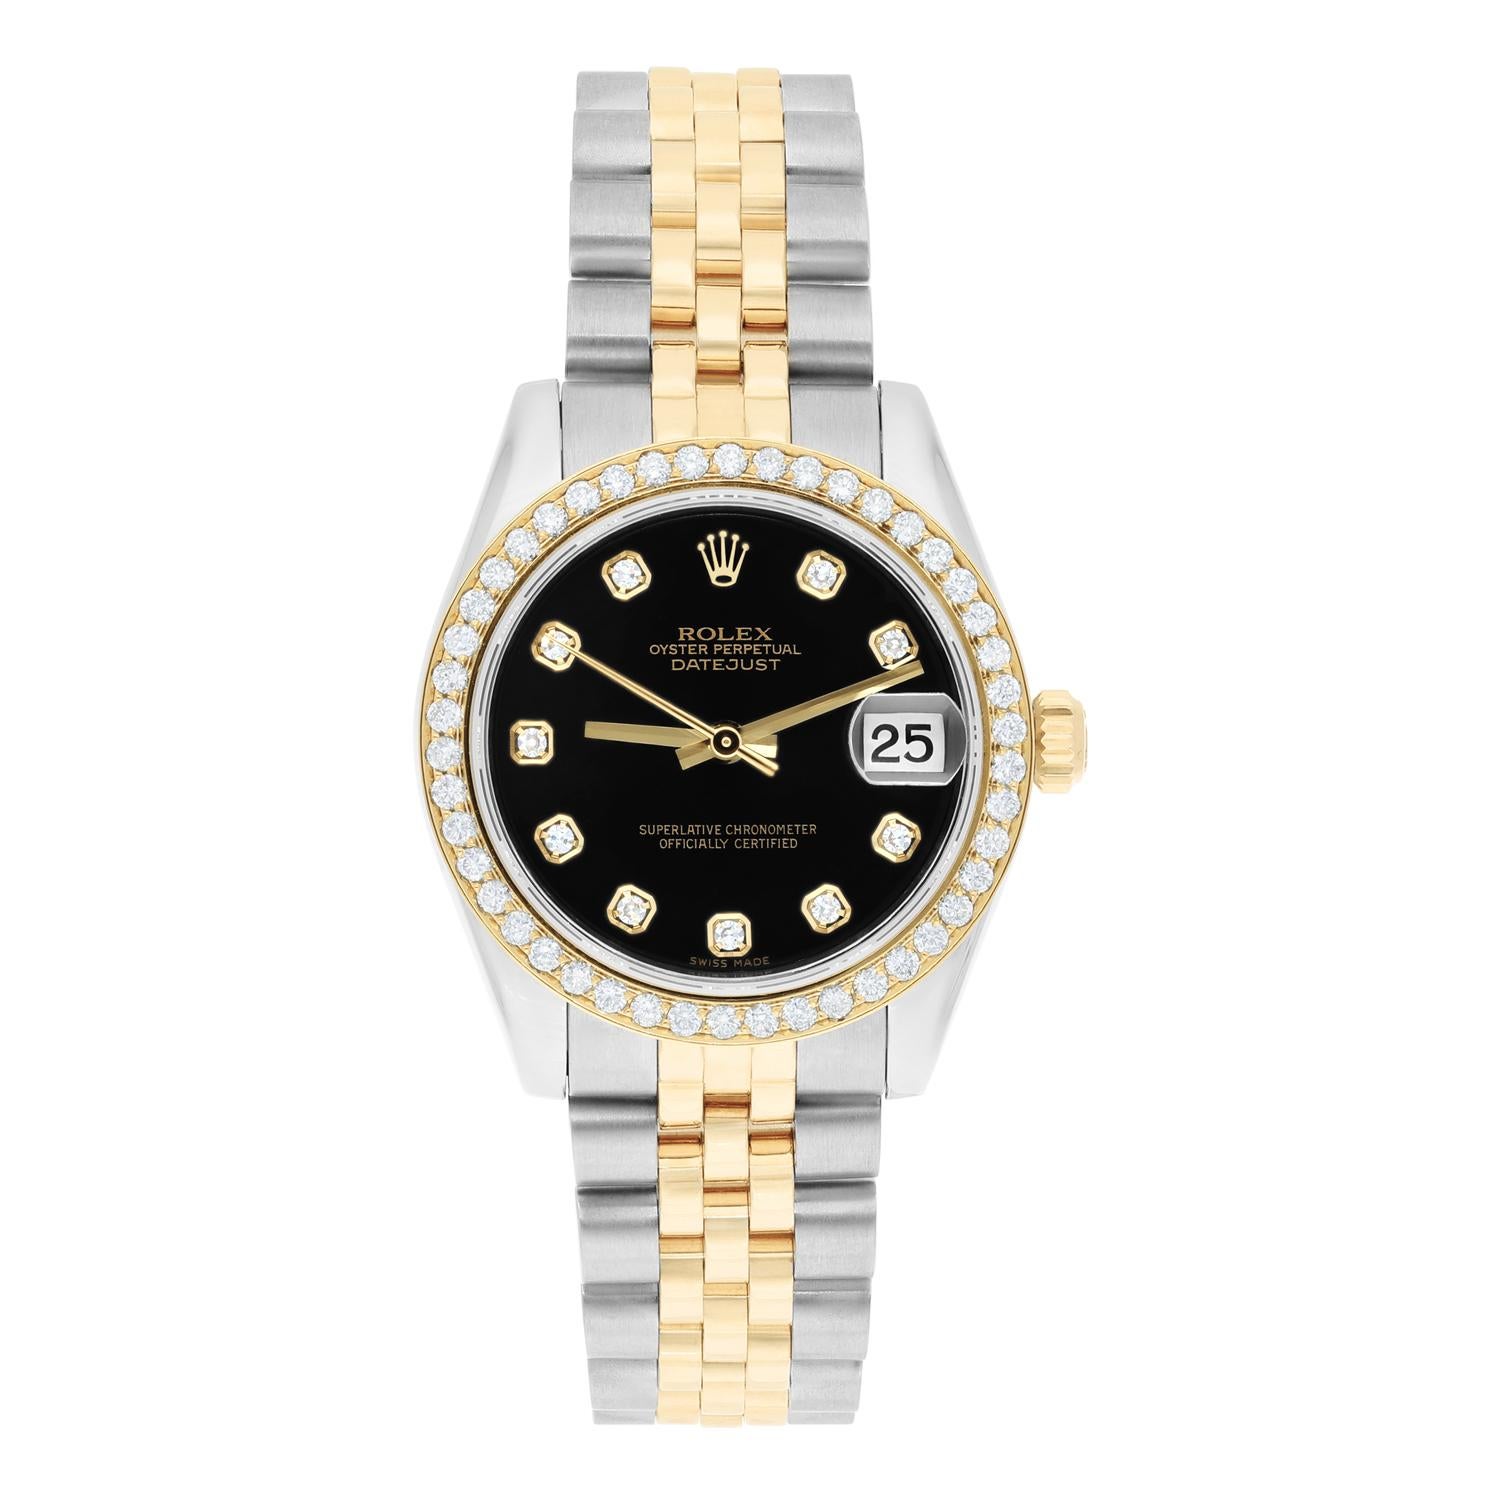 Cette superbe montre Rolex Datejust est une véritable pièce de luxe pour toute femme. La montre est dotée d'un magnifique bracelet jubilé bicolore jaune et argent avec boucle déployante, d'un boîtier de 31 mm, d'un cadran noir en diamants d'usine et